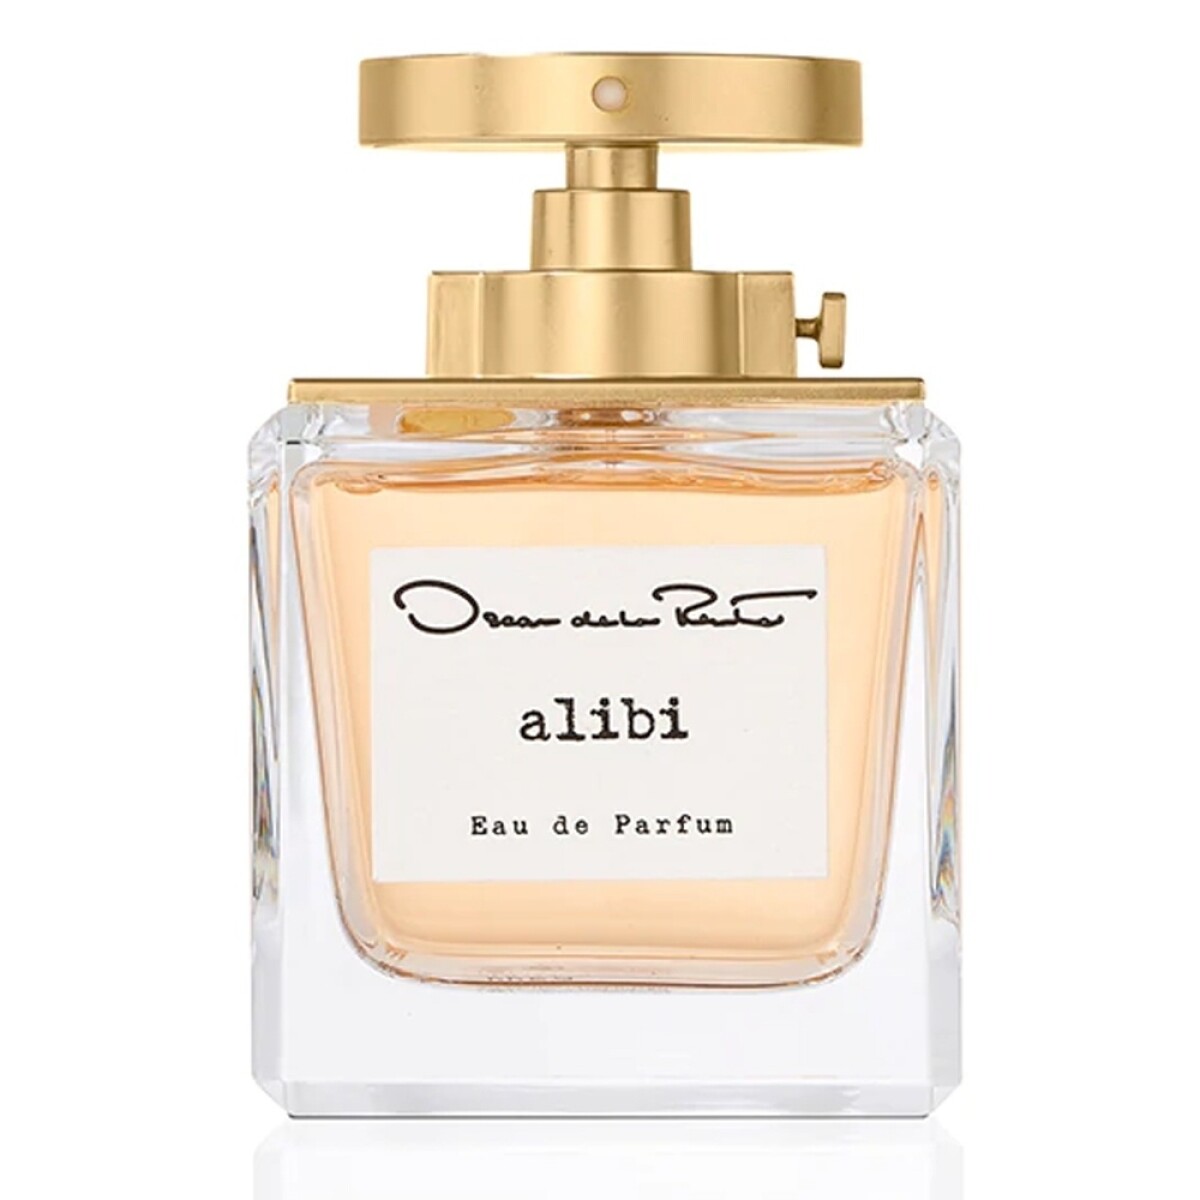 Perfume Oscar De La Renta Alibi Edp 100ml 